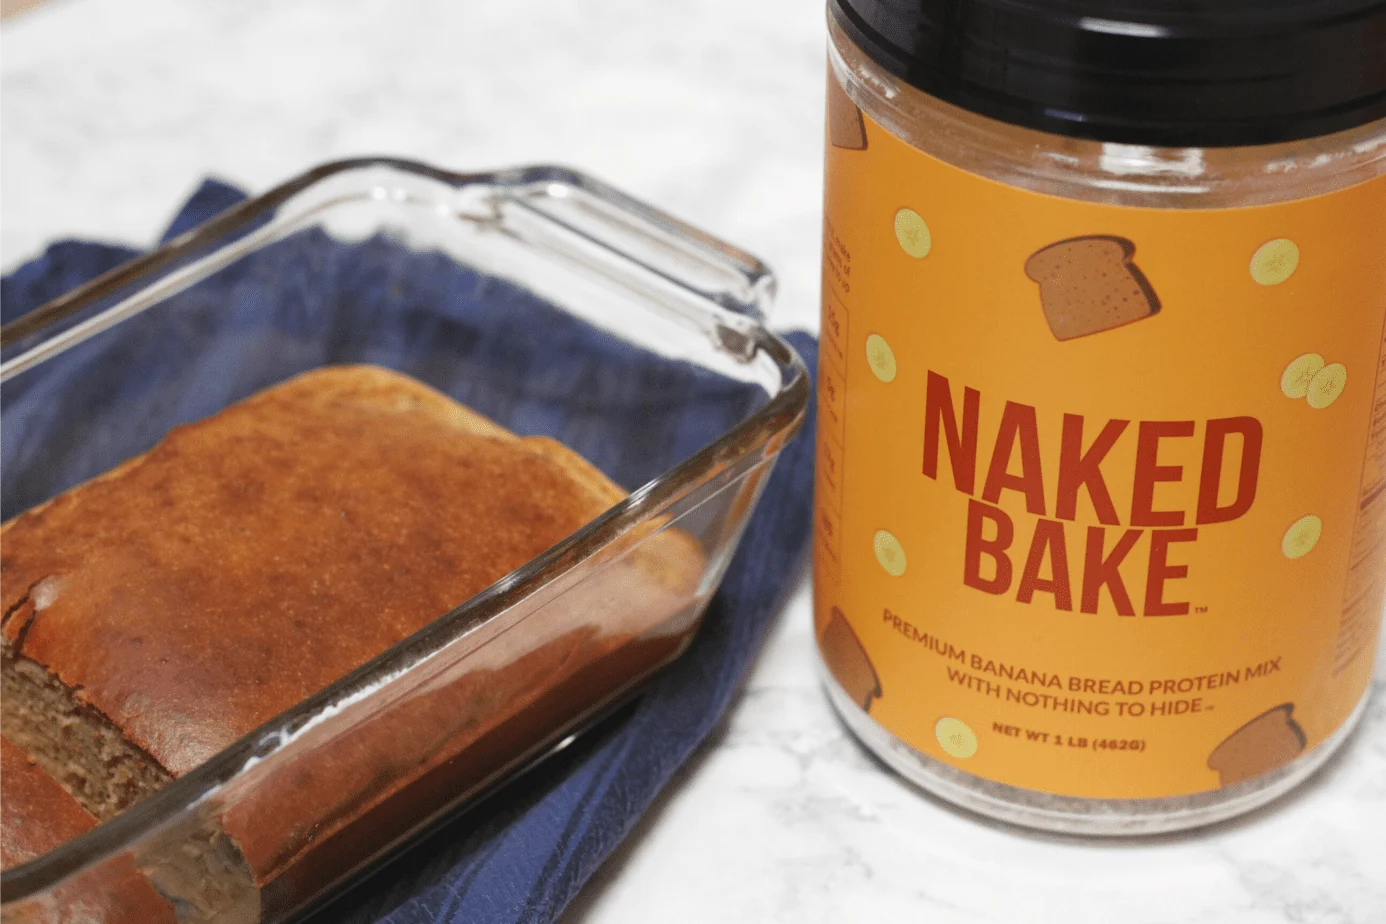 naked bake banana bread protein mix